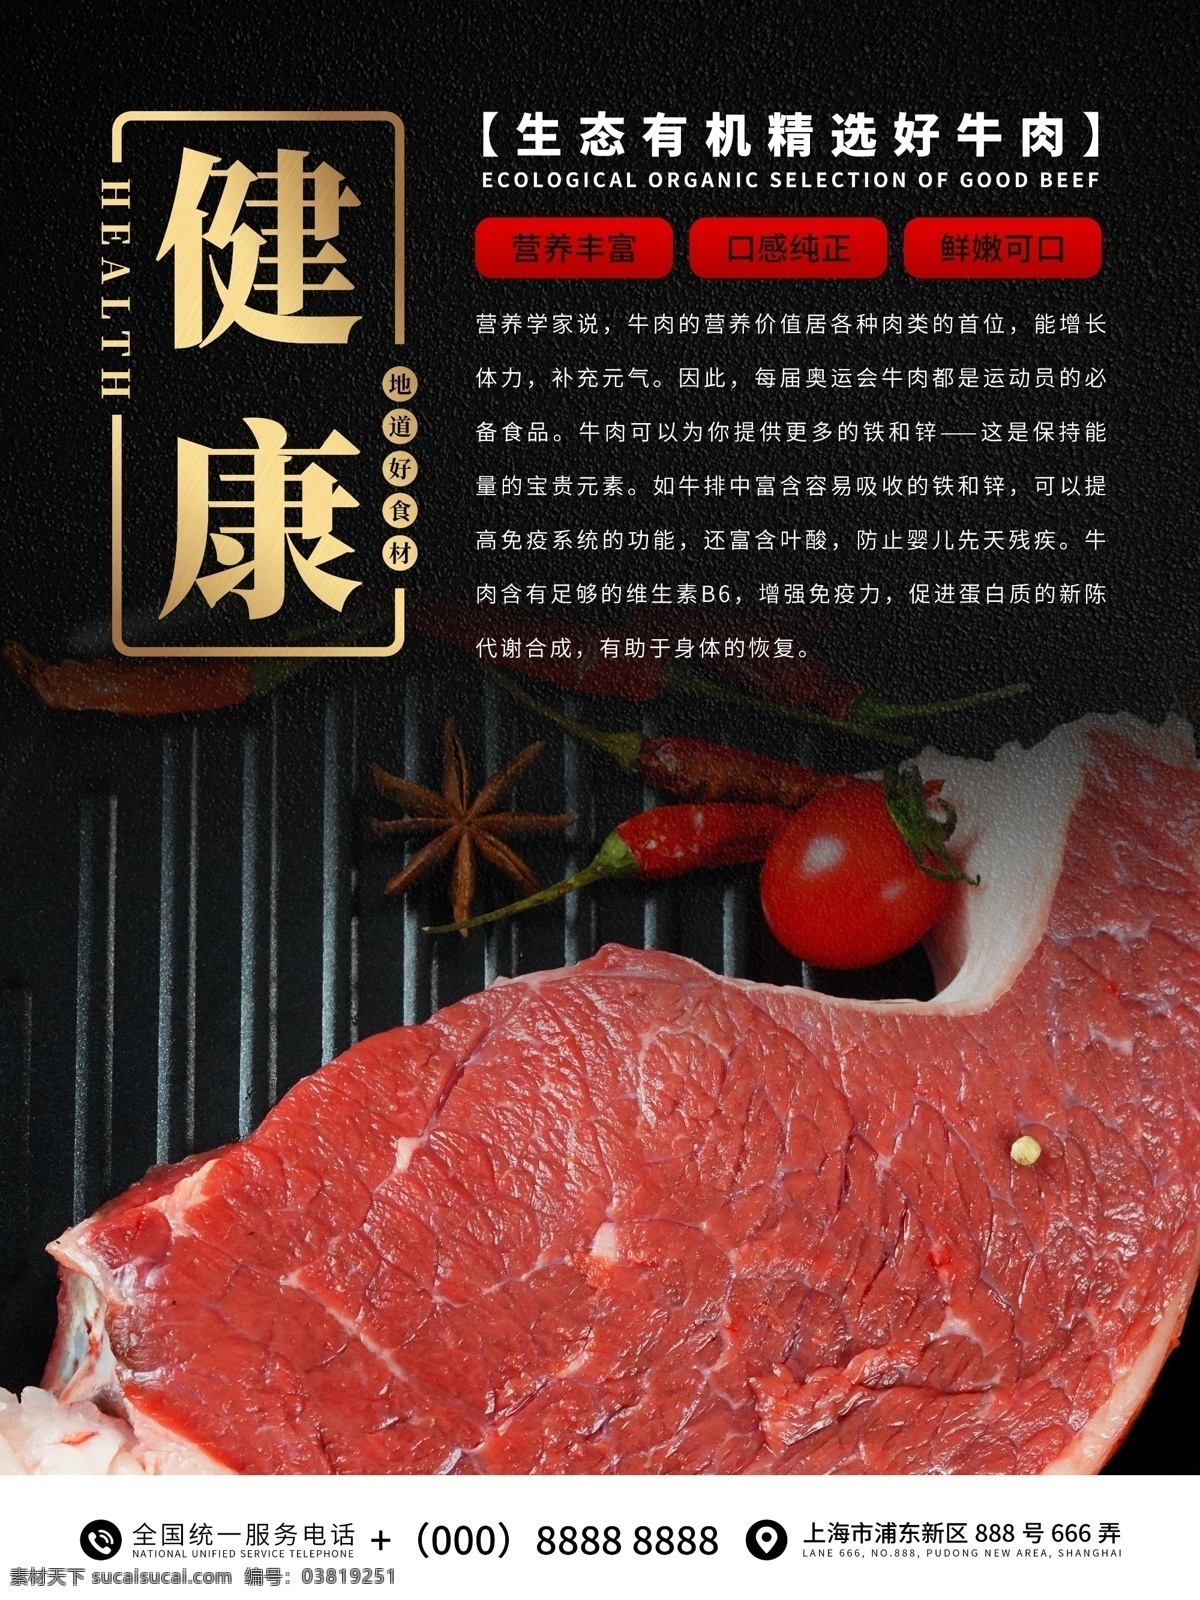 健康牛肉海报 牛肉 牛排 健康牛肉 有机食品 美食海报 烤肉 产品介绍 超市海报 生鲜海报 宣传海报